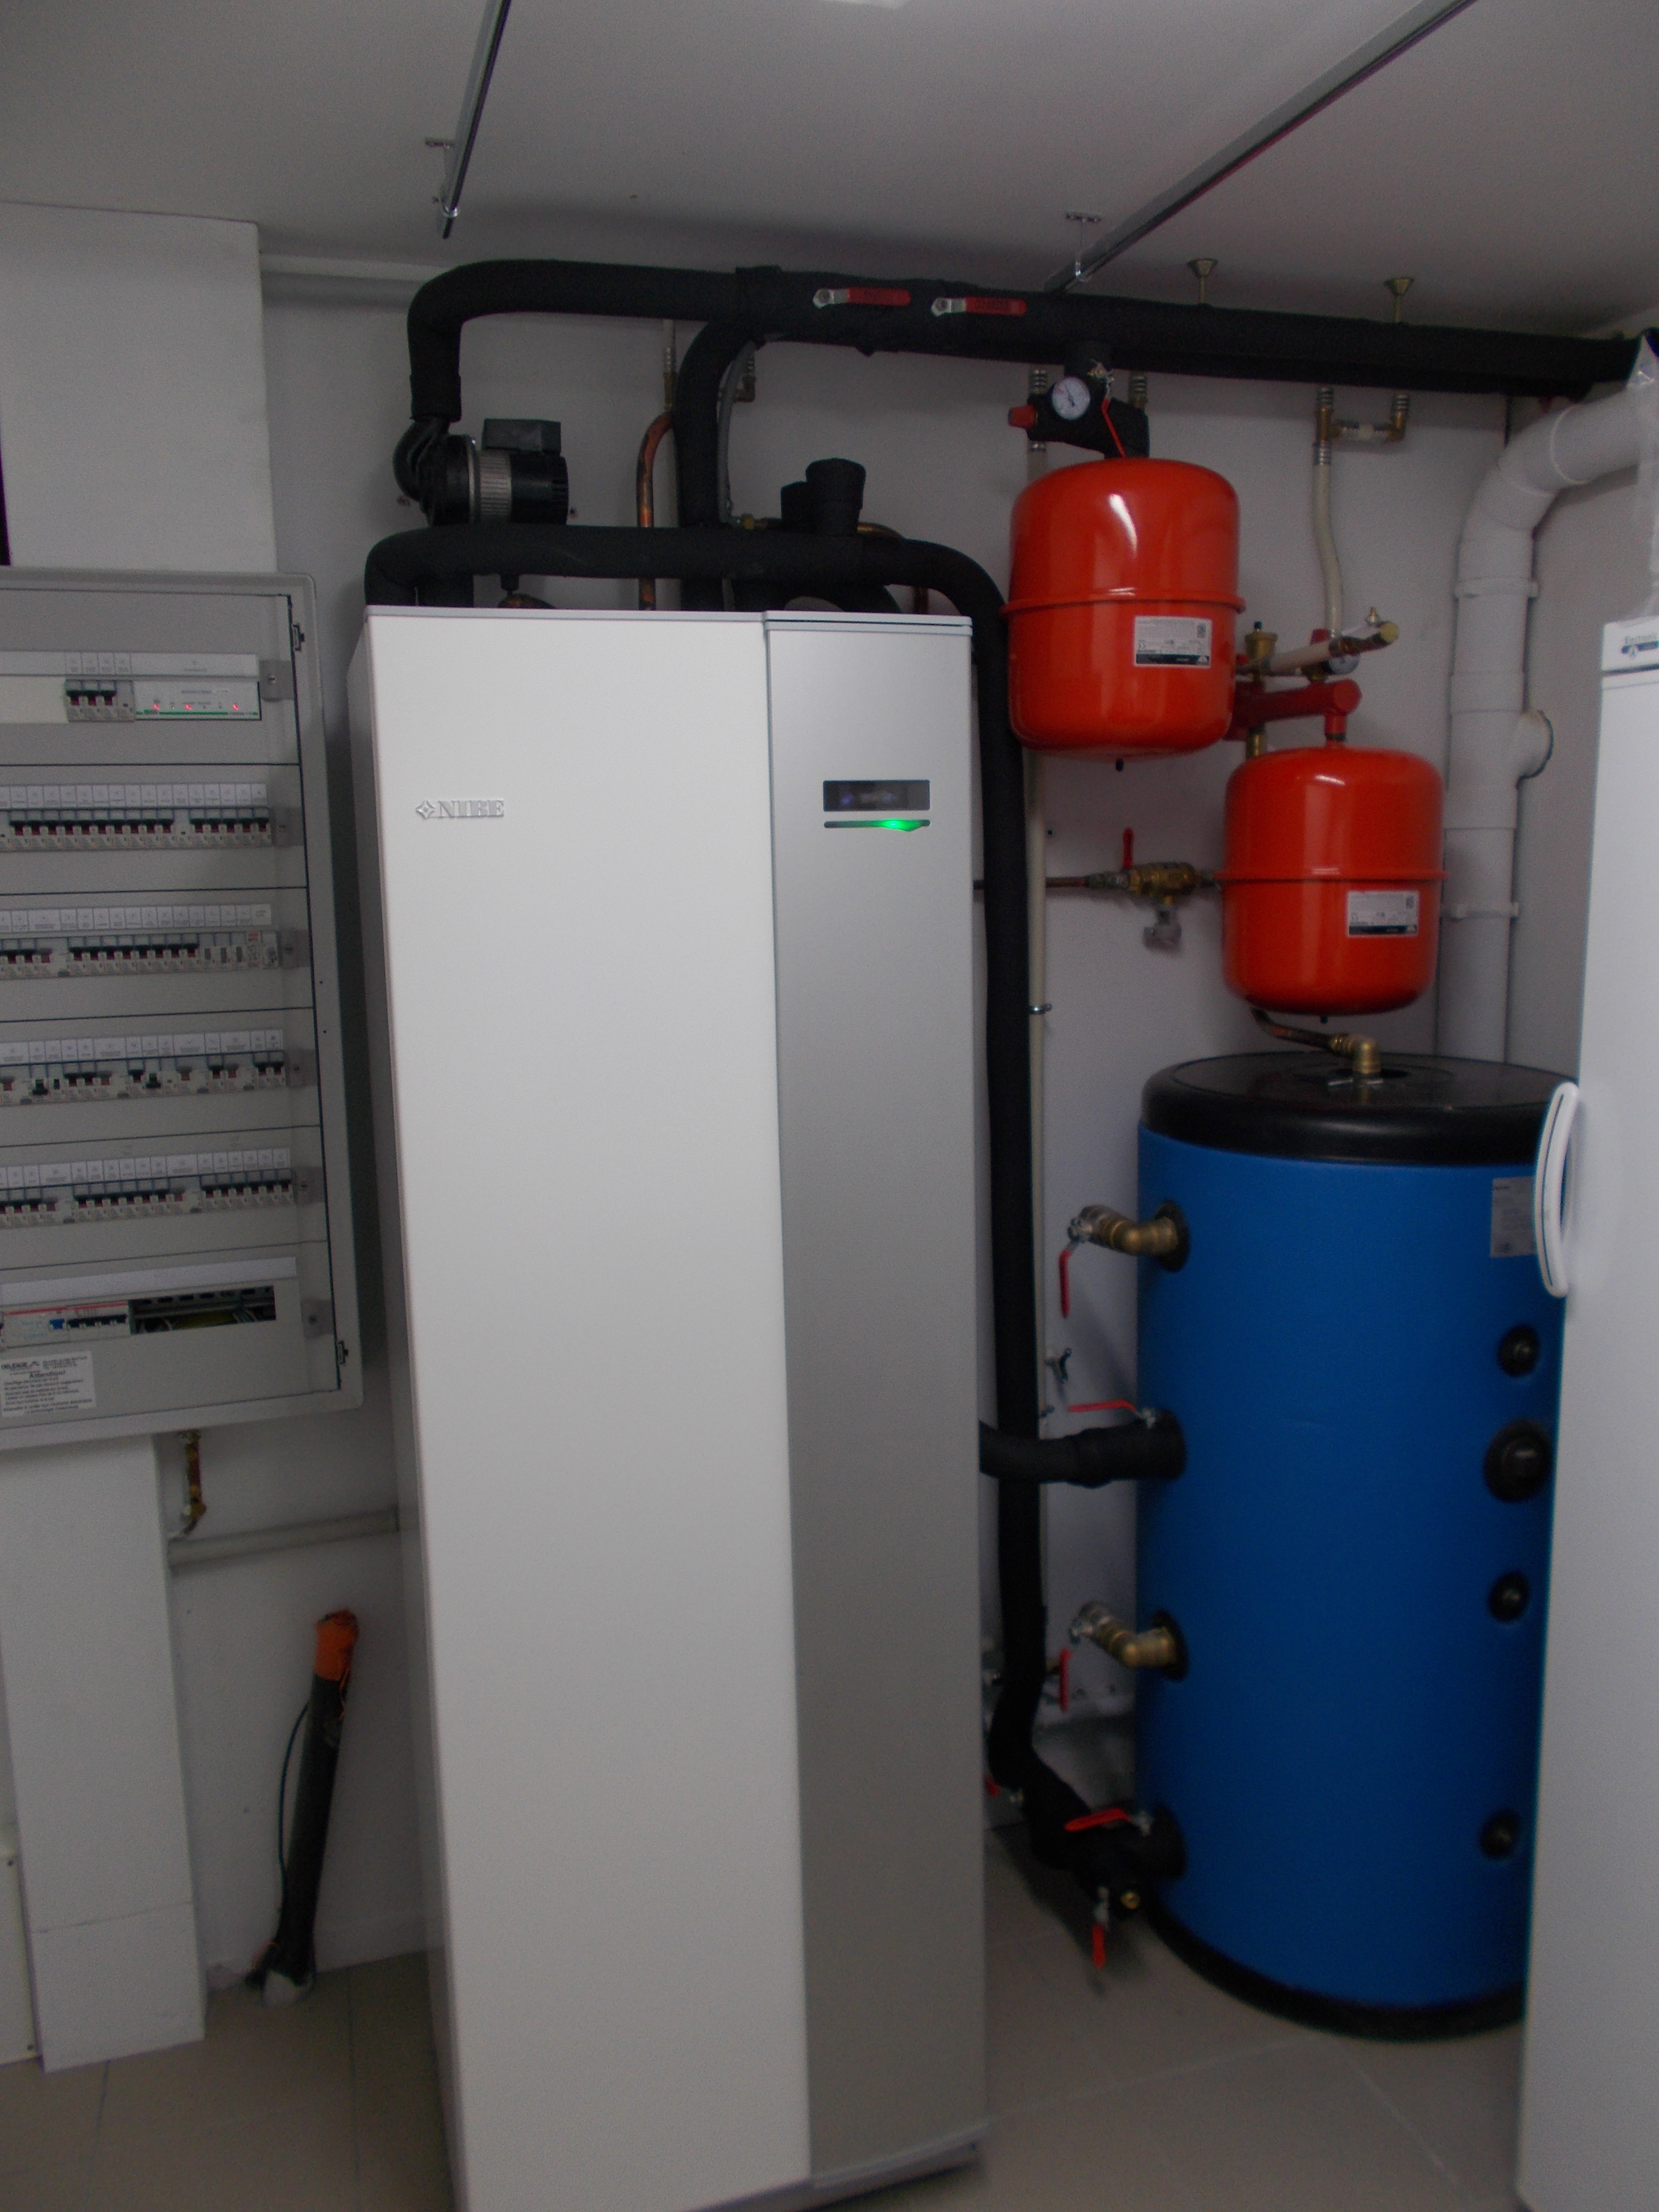 Installation d’une pompe à chaleur géothermique NIBE F1245-10 PC à VEYRIER DU LAC (74) en remplacement d‘un chauffage électrique au sol.